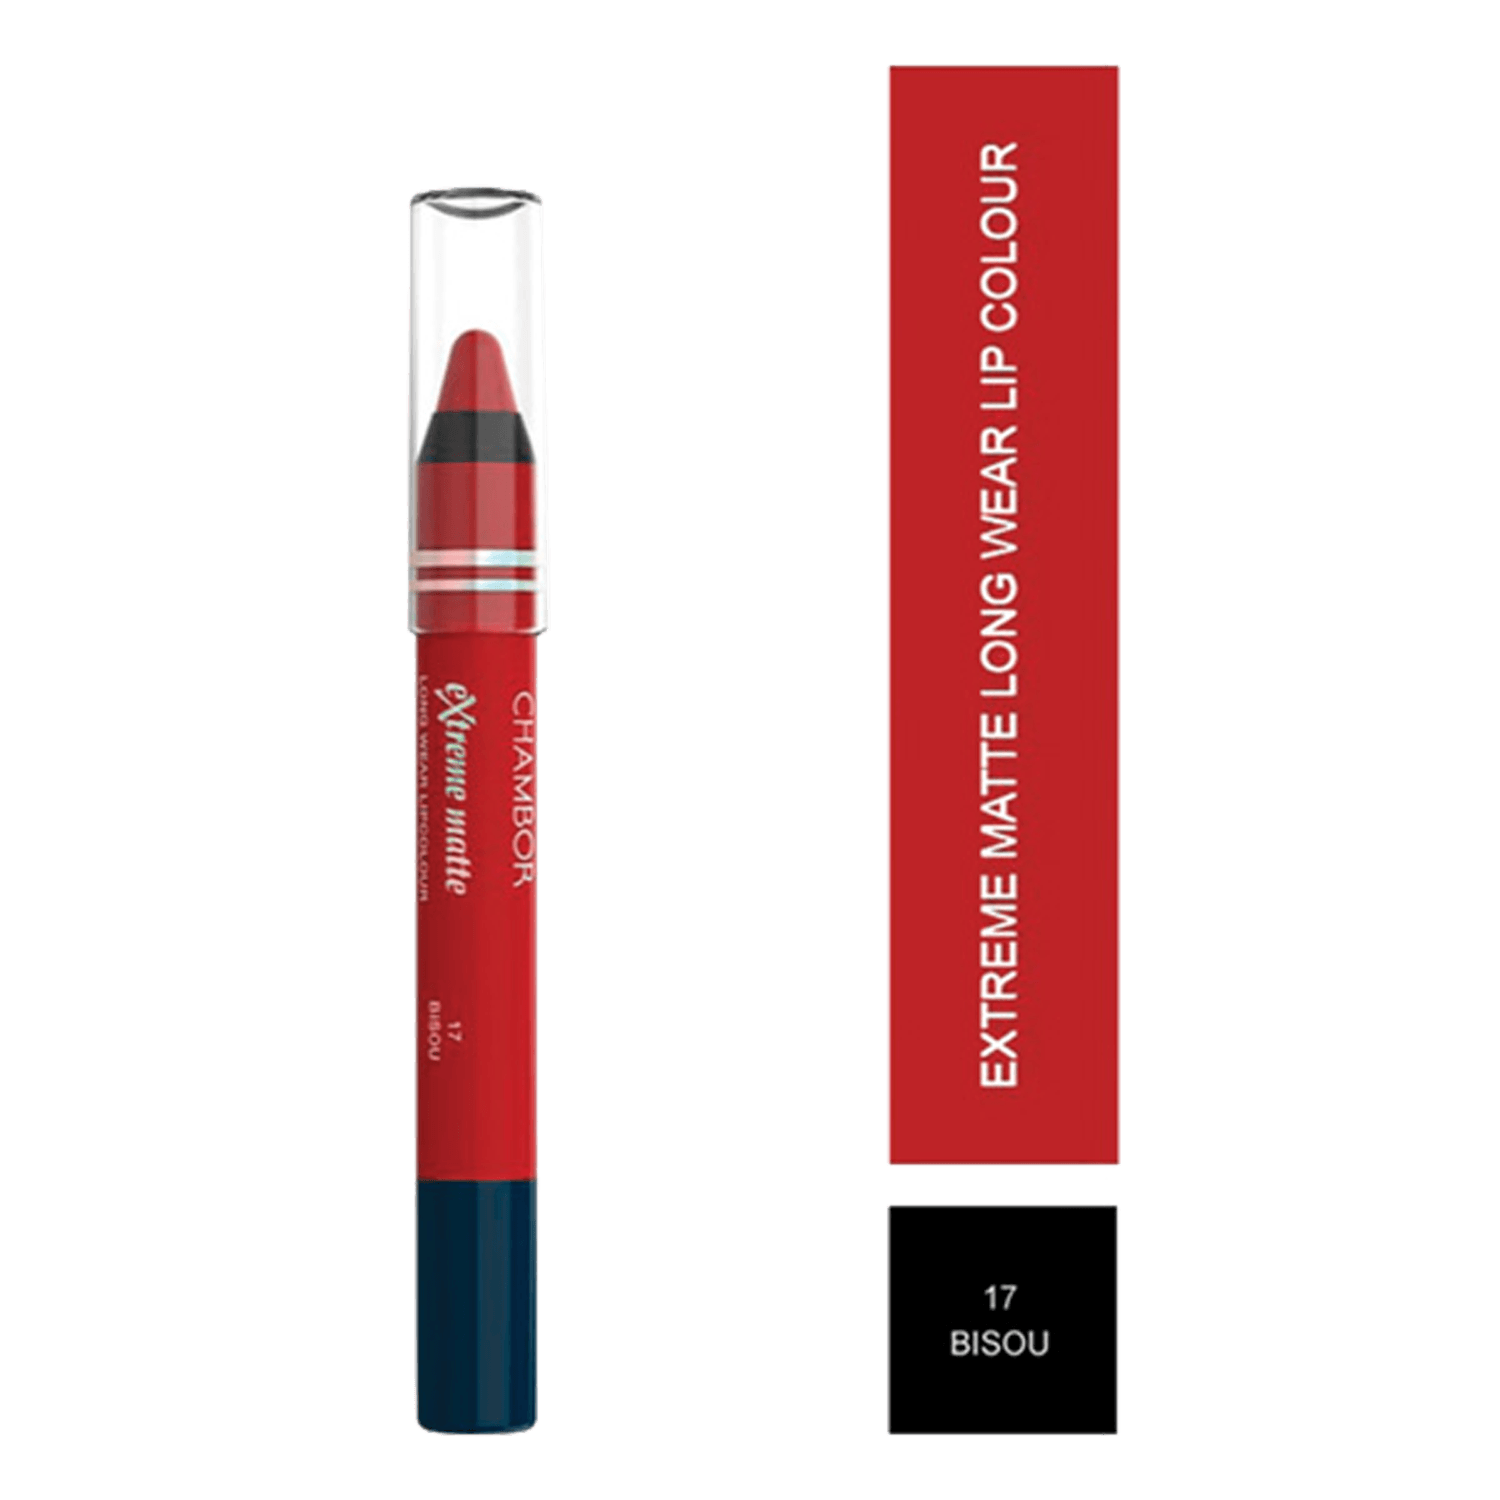 Chambor | Chambor Extreme Matte Long Wear Lip Colour Make up Les Meringues Collection - Bisou, 17 (2.8g)